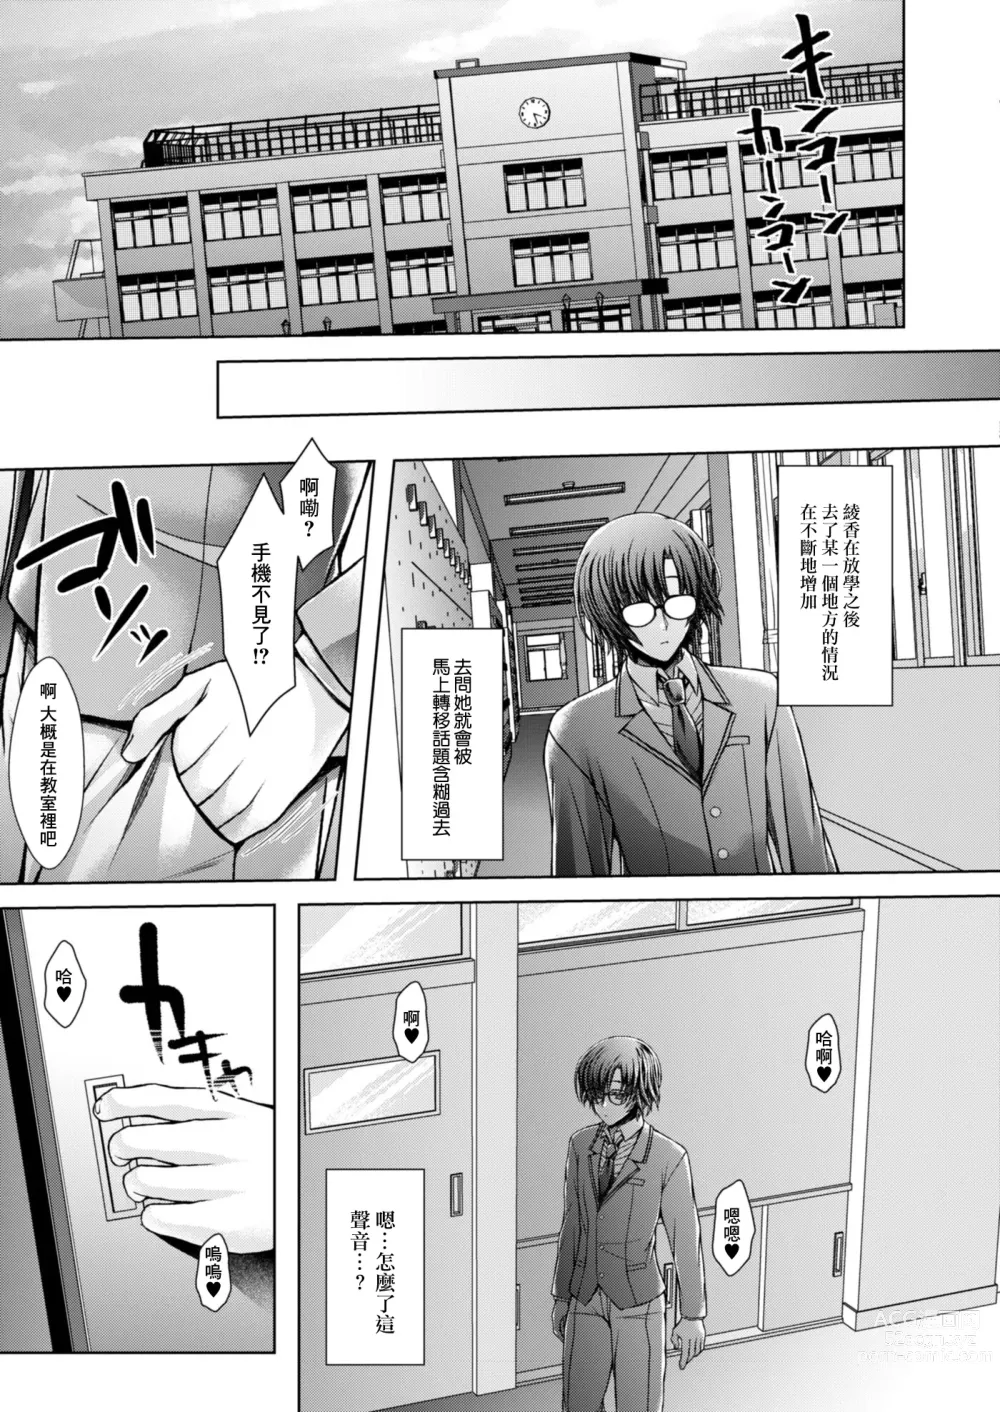 Page 5 of manga Ore no Shiranai Kanojo